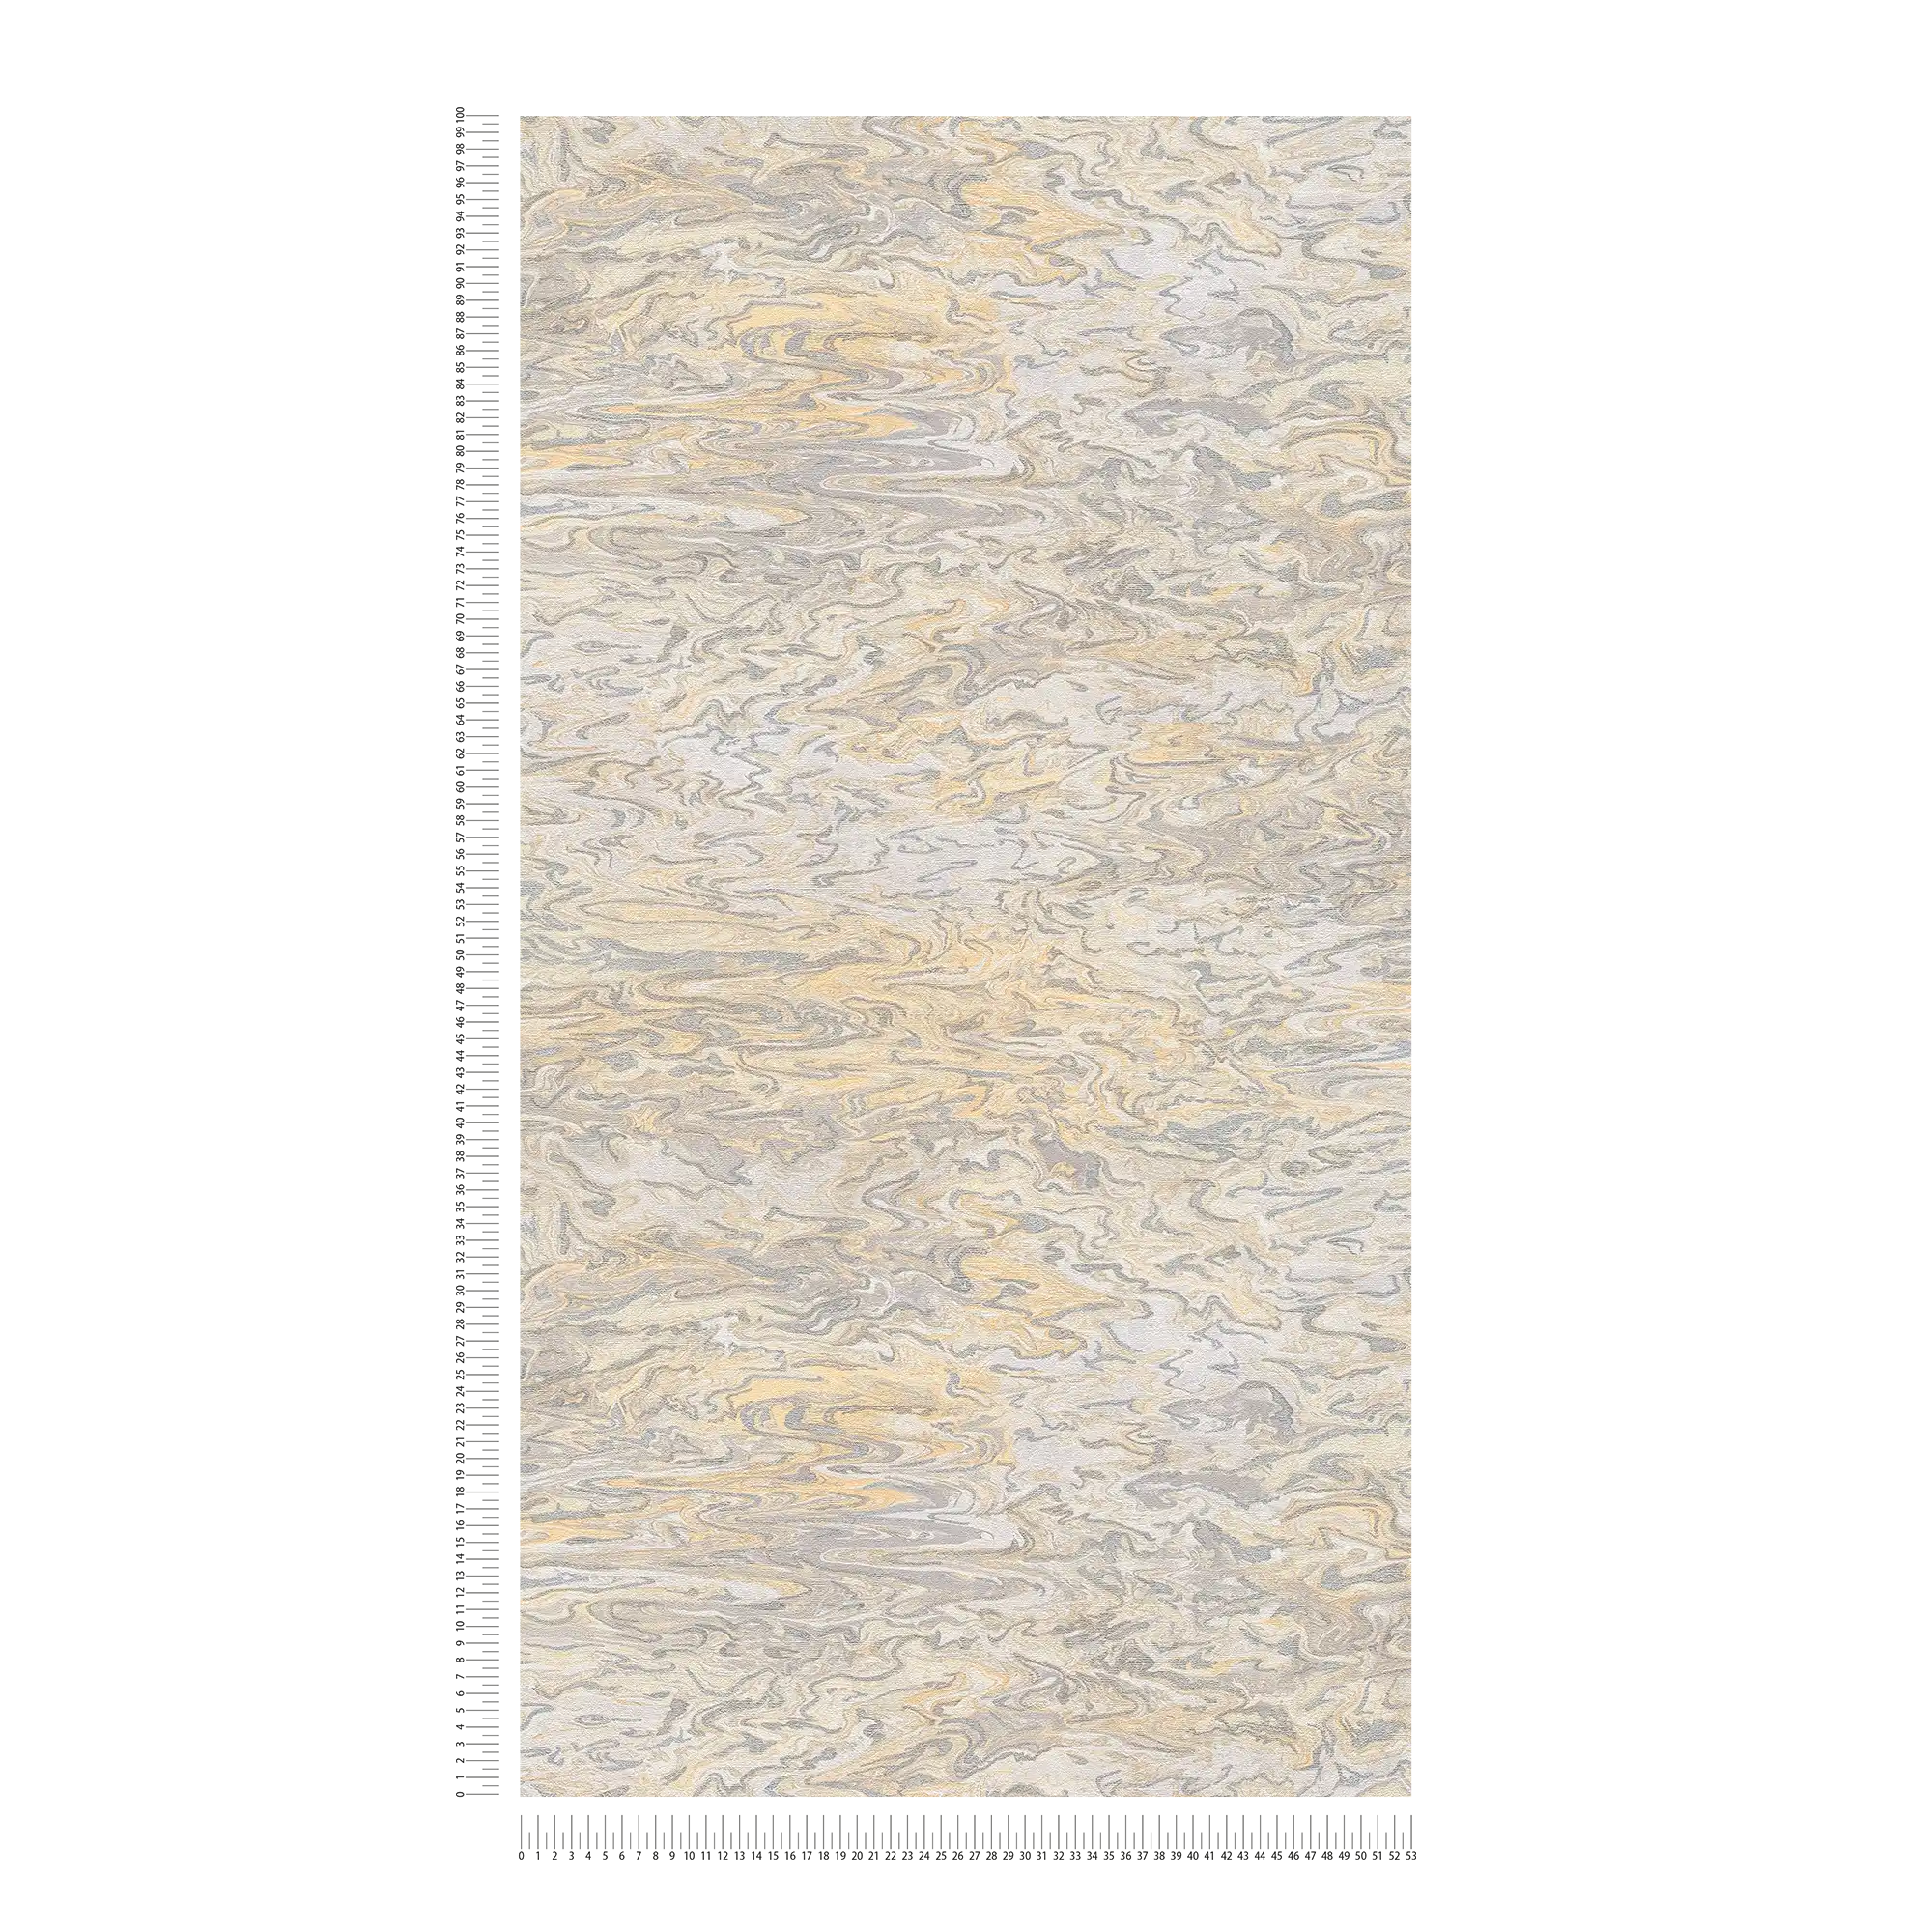             Gemarmerd behang abstract ontwerp - beige, grijs, crème
        